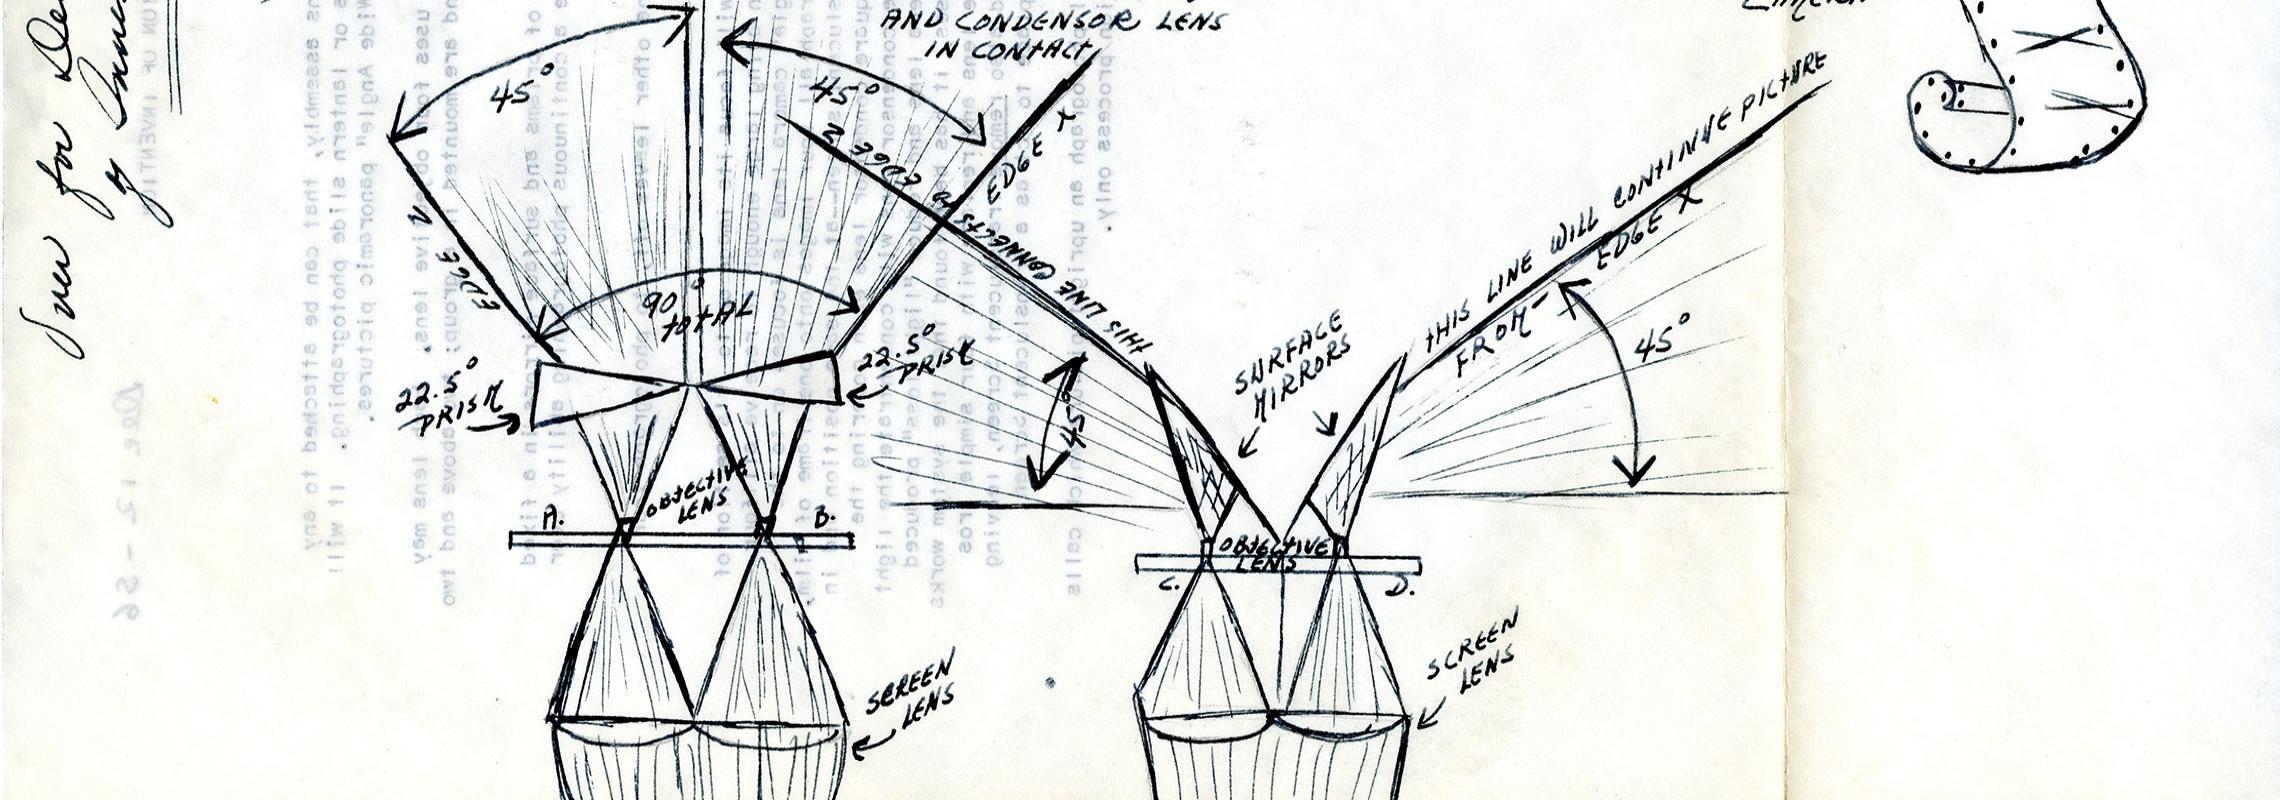 Patent Camera Diagram, R1499 f.22